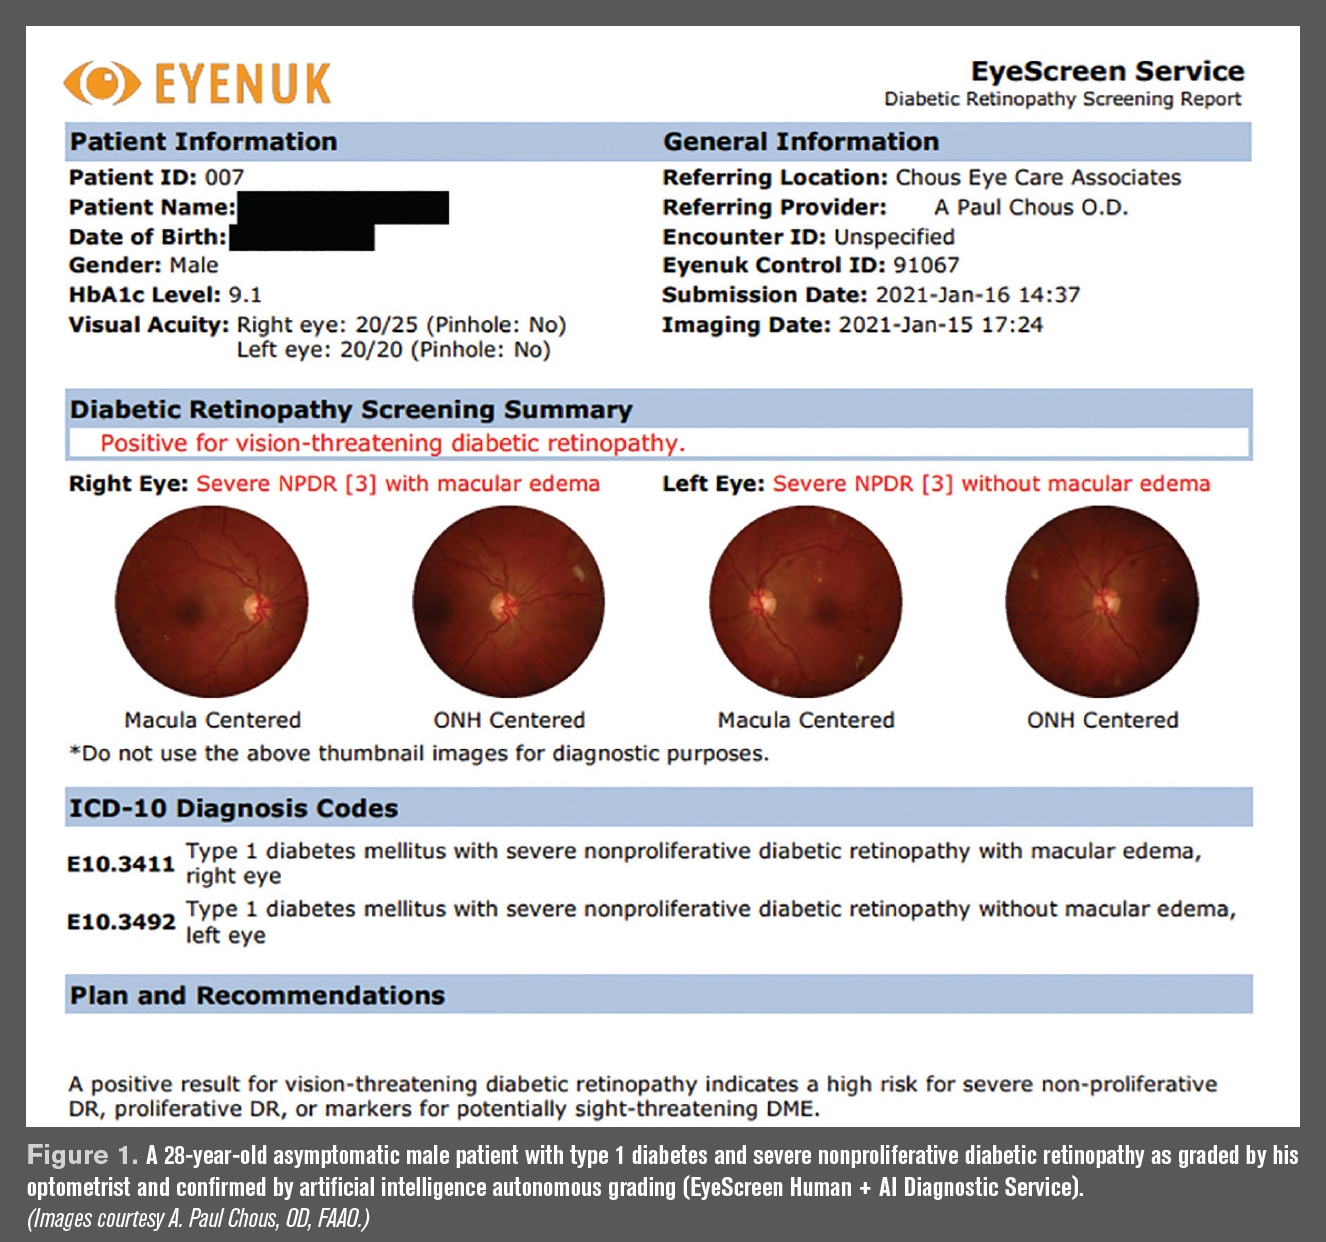 diabetic retinopathy guidelines 2021)